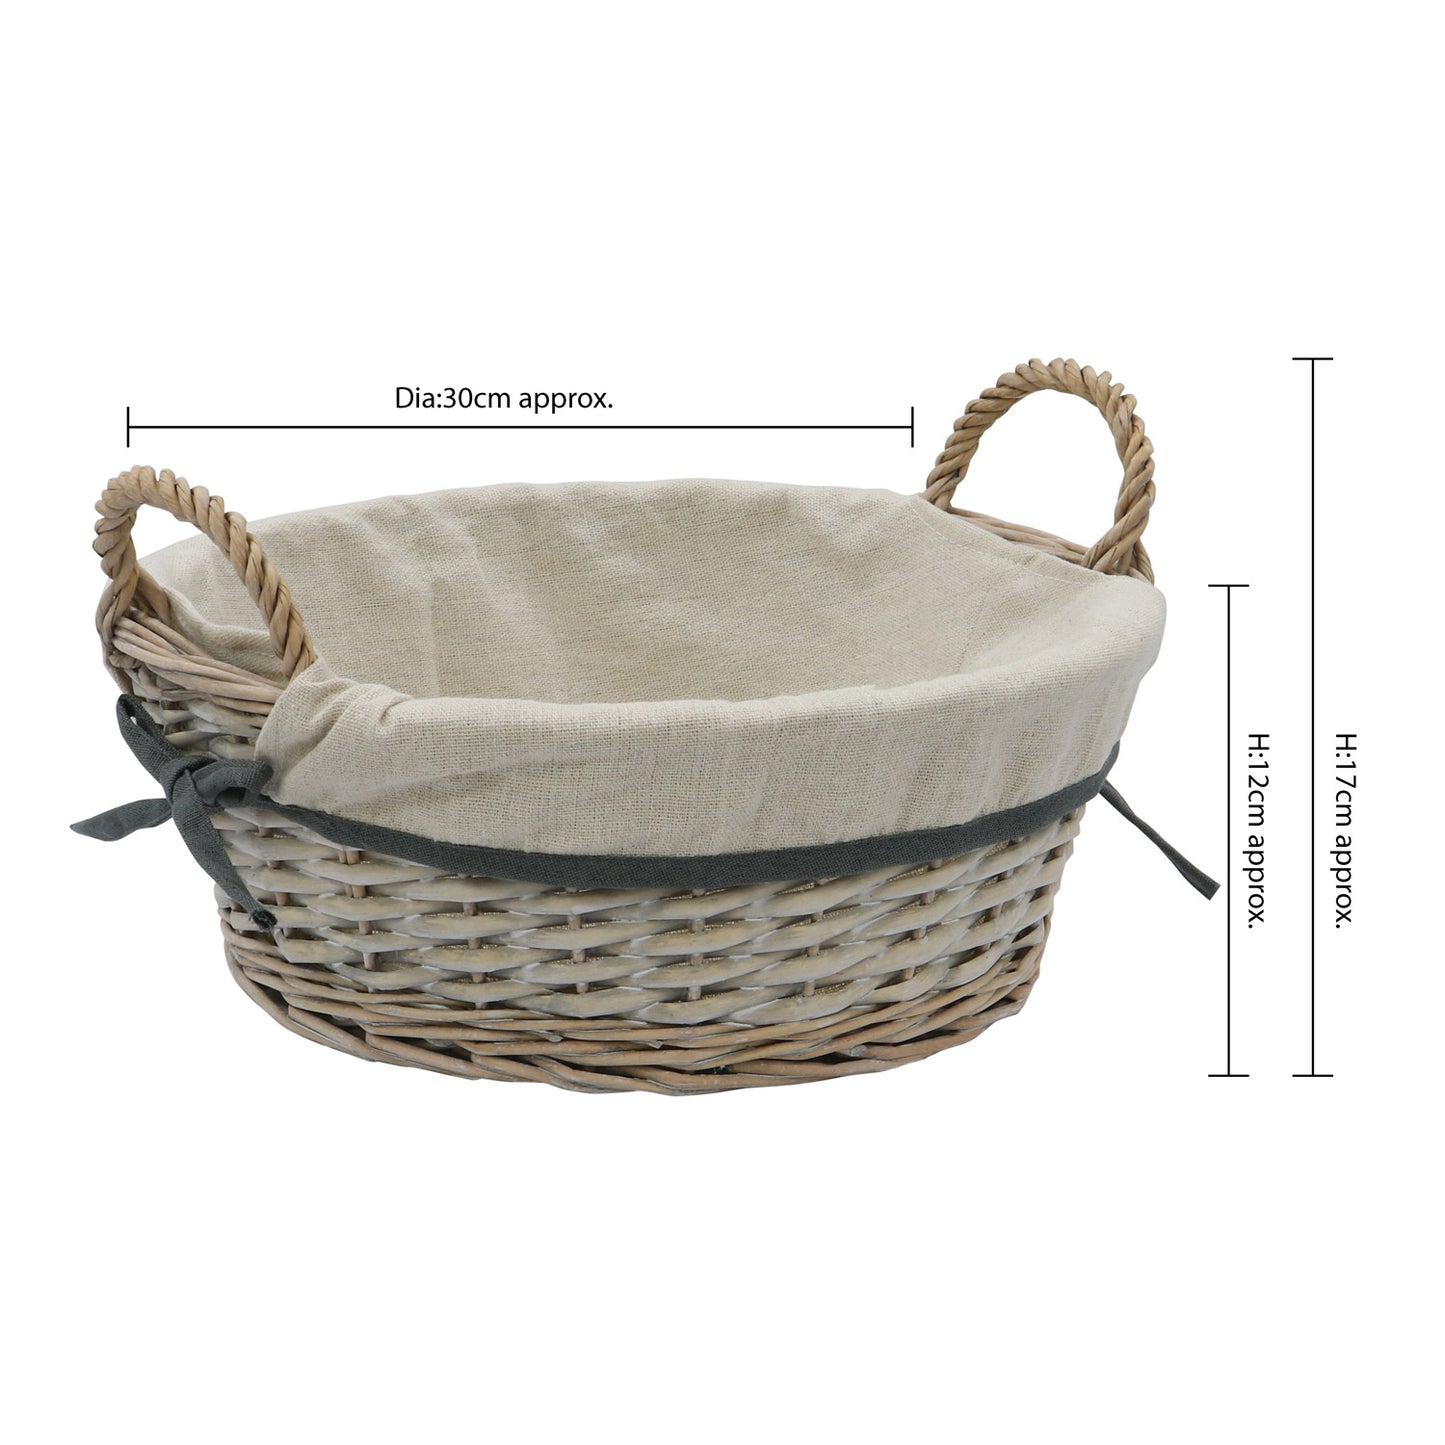 Arianna Antique Wash Round Willow Storage Basket